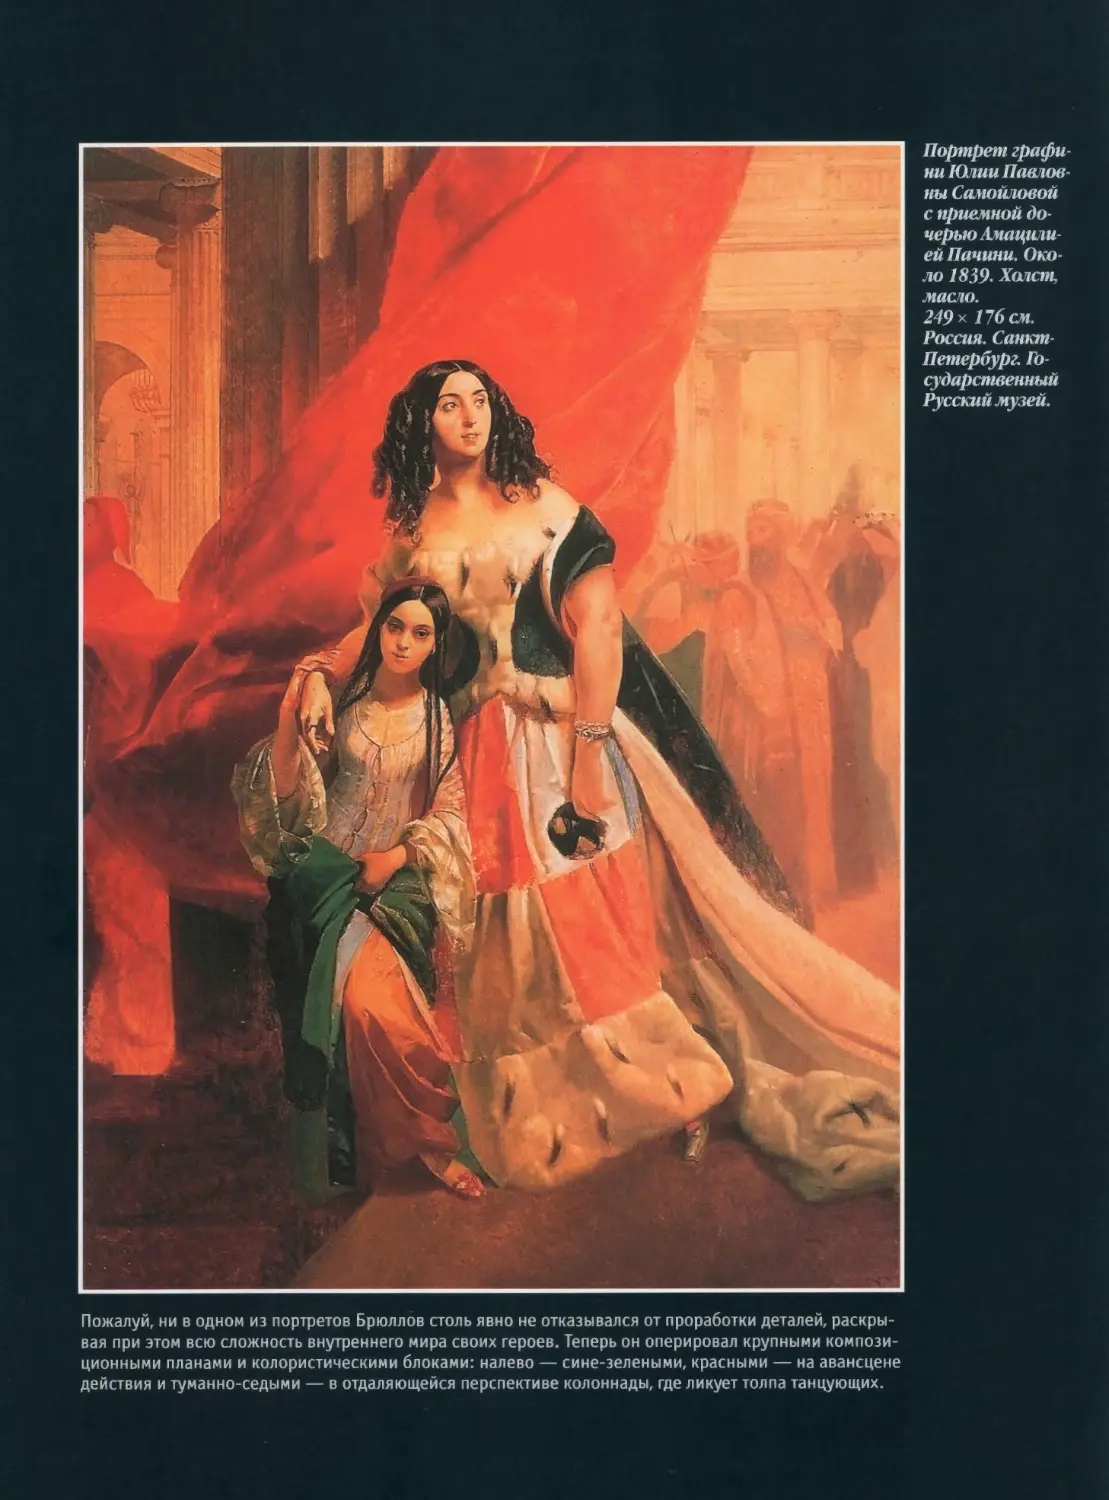 Портрет графини Ю.П.Самойловой с приемной дочерью Амацилией Пачини